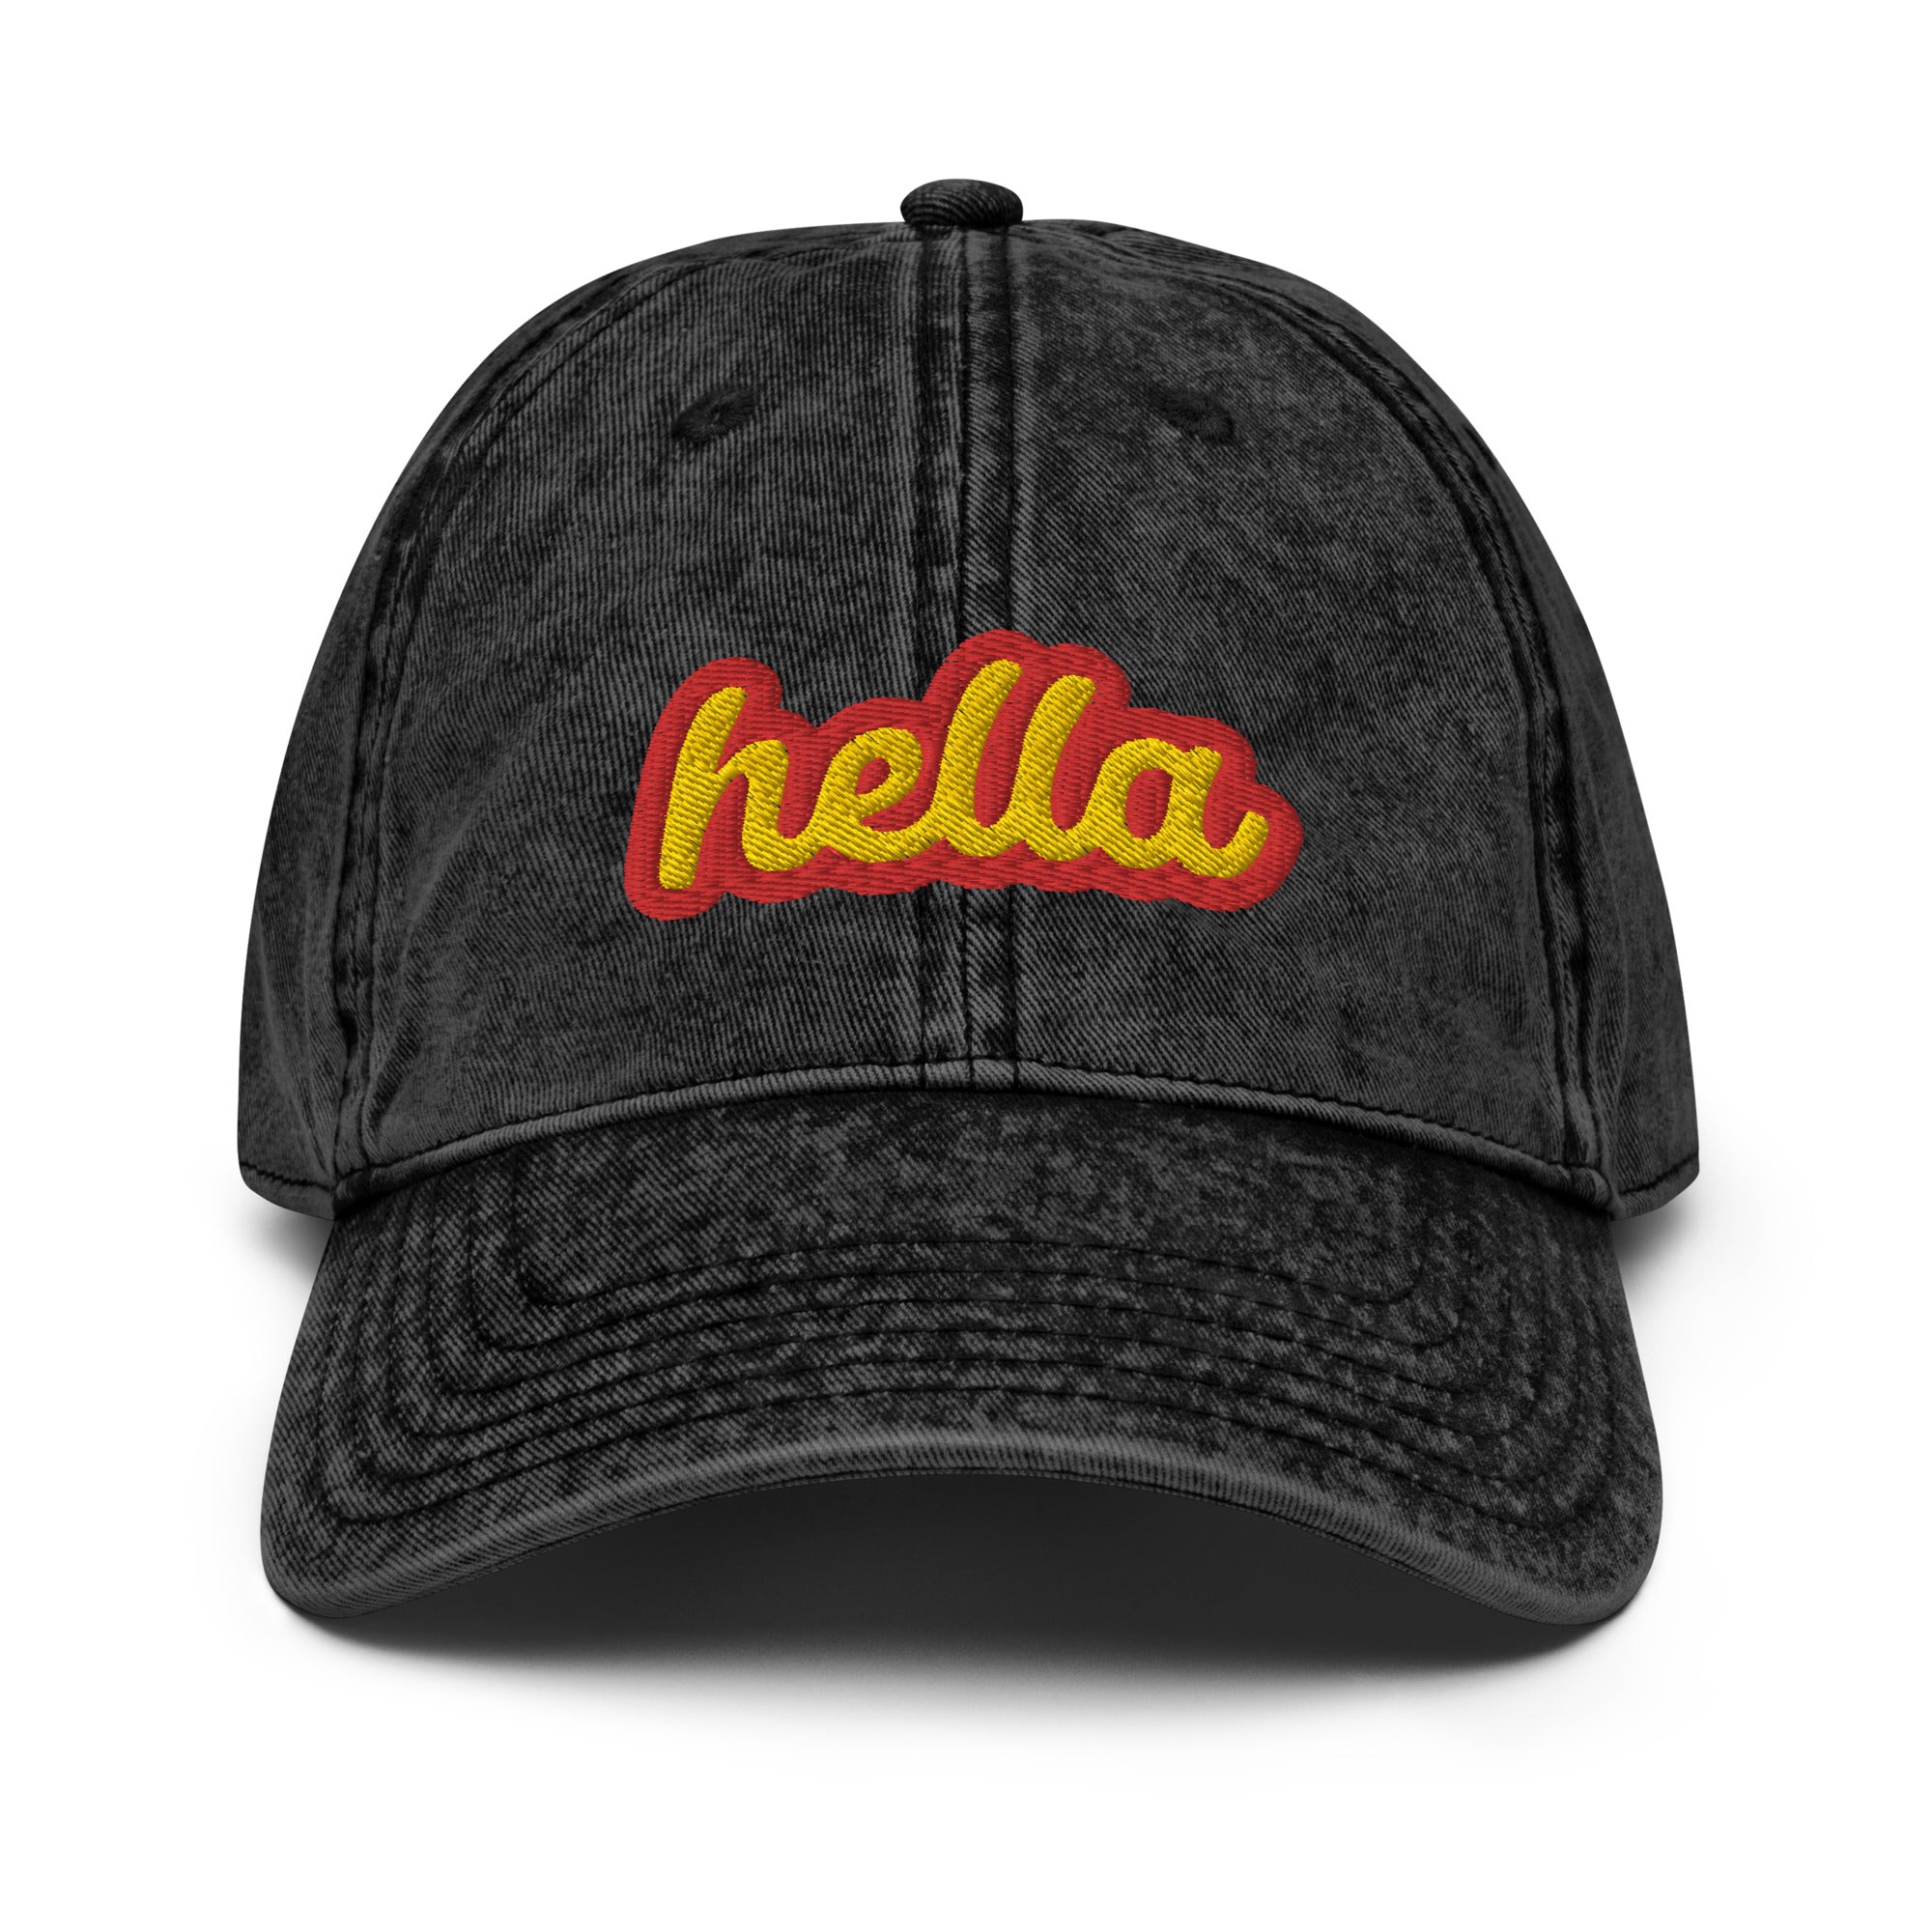 "Hella" Vintage Twill Dad Hat - San Francisco Slang